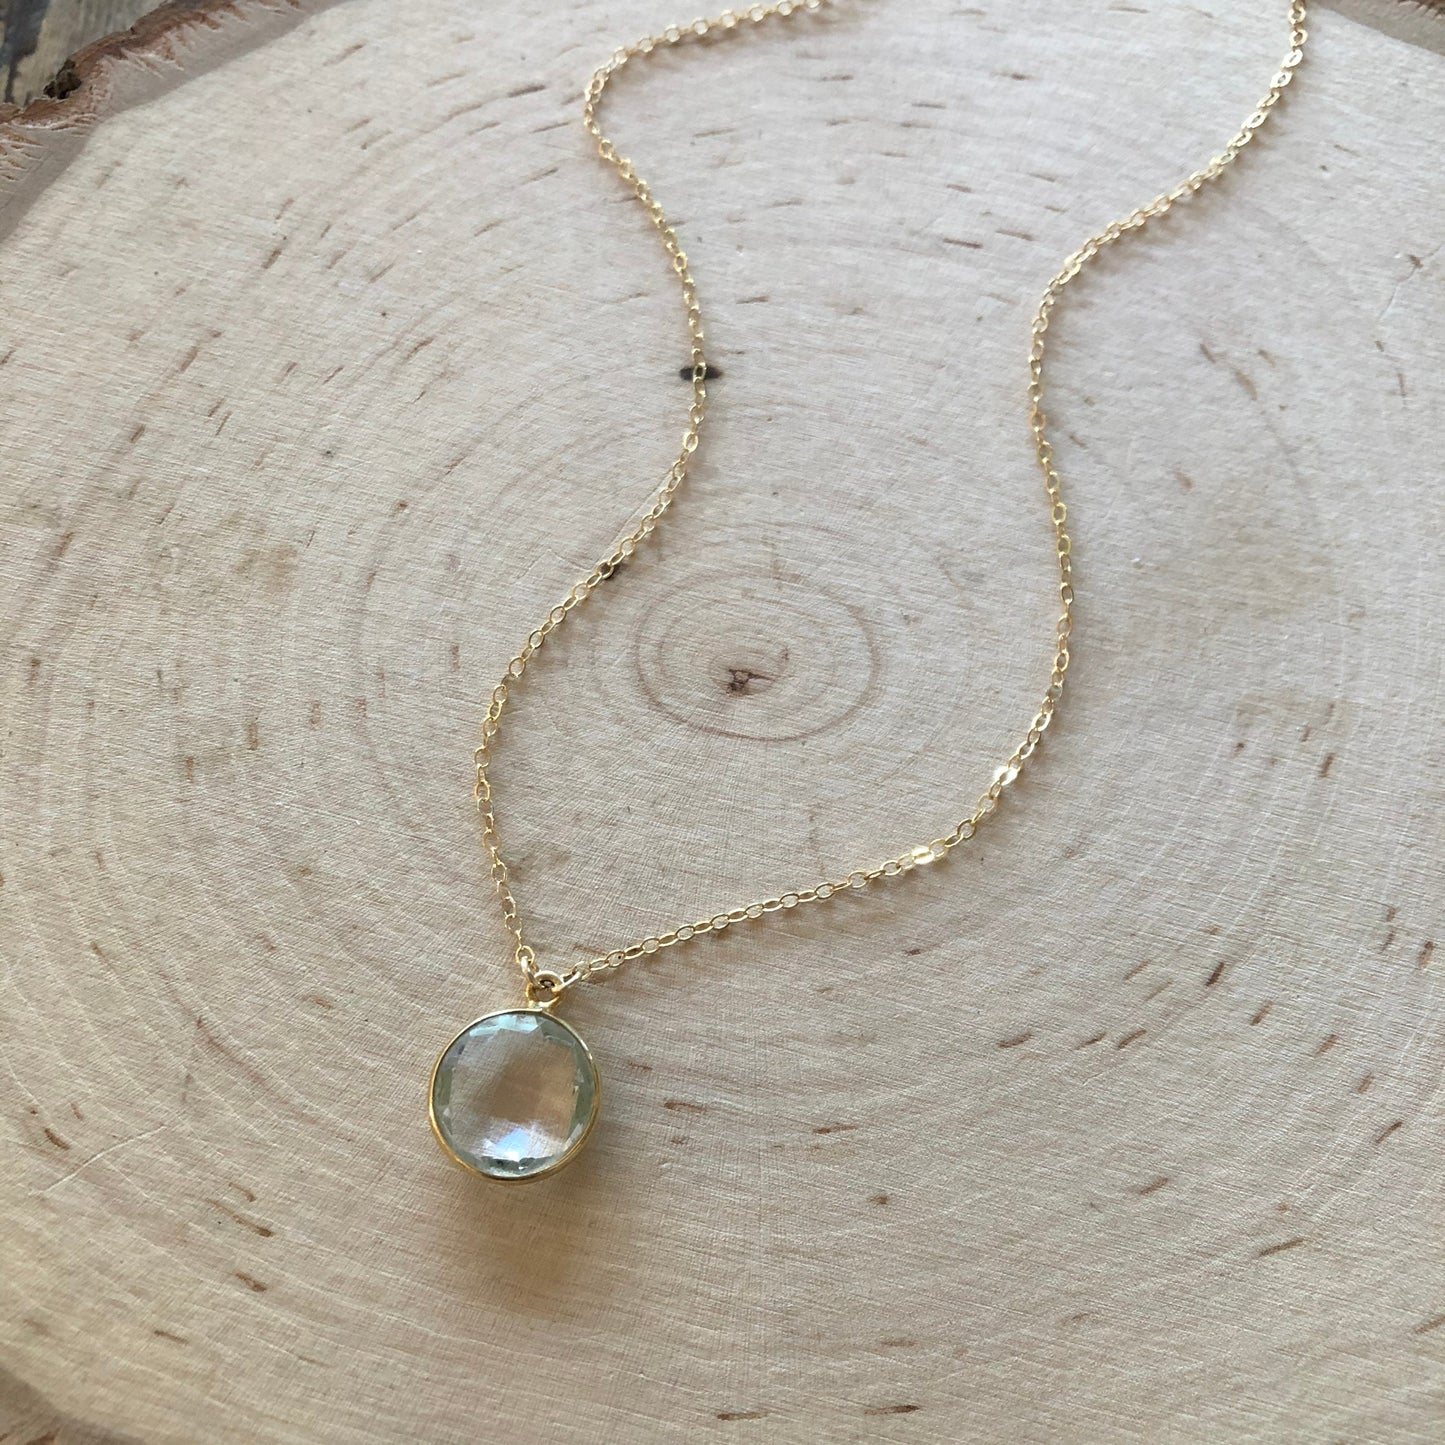 Clear quartz circle pendant necklace